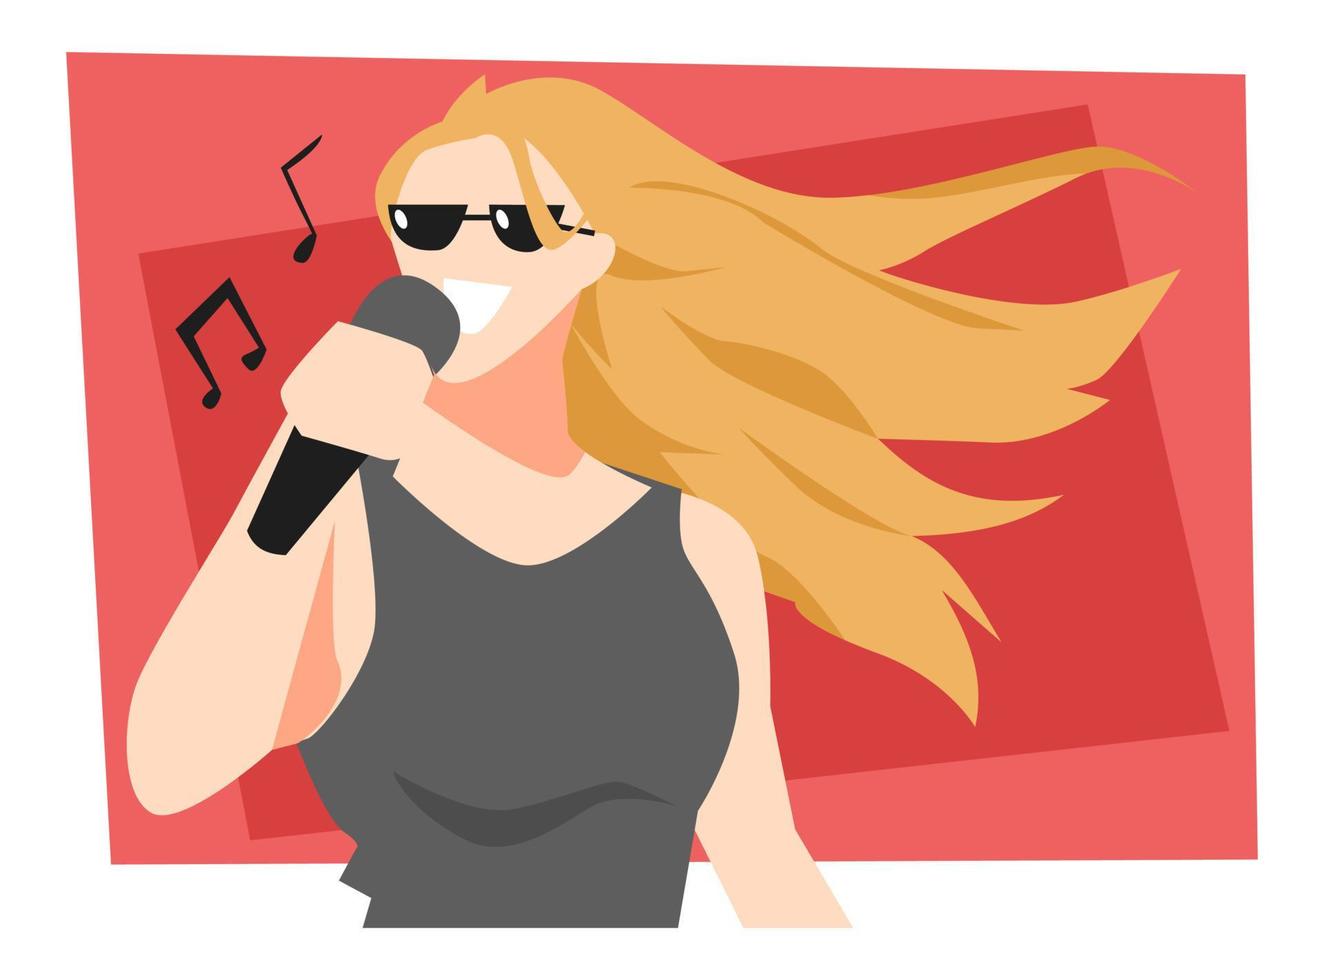 ilustração de menina loira com óculos cantando. microfone. fundo vermelho. ícone da música. conceito de performance, concerto, banda, música, arte, etc. vetor plano